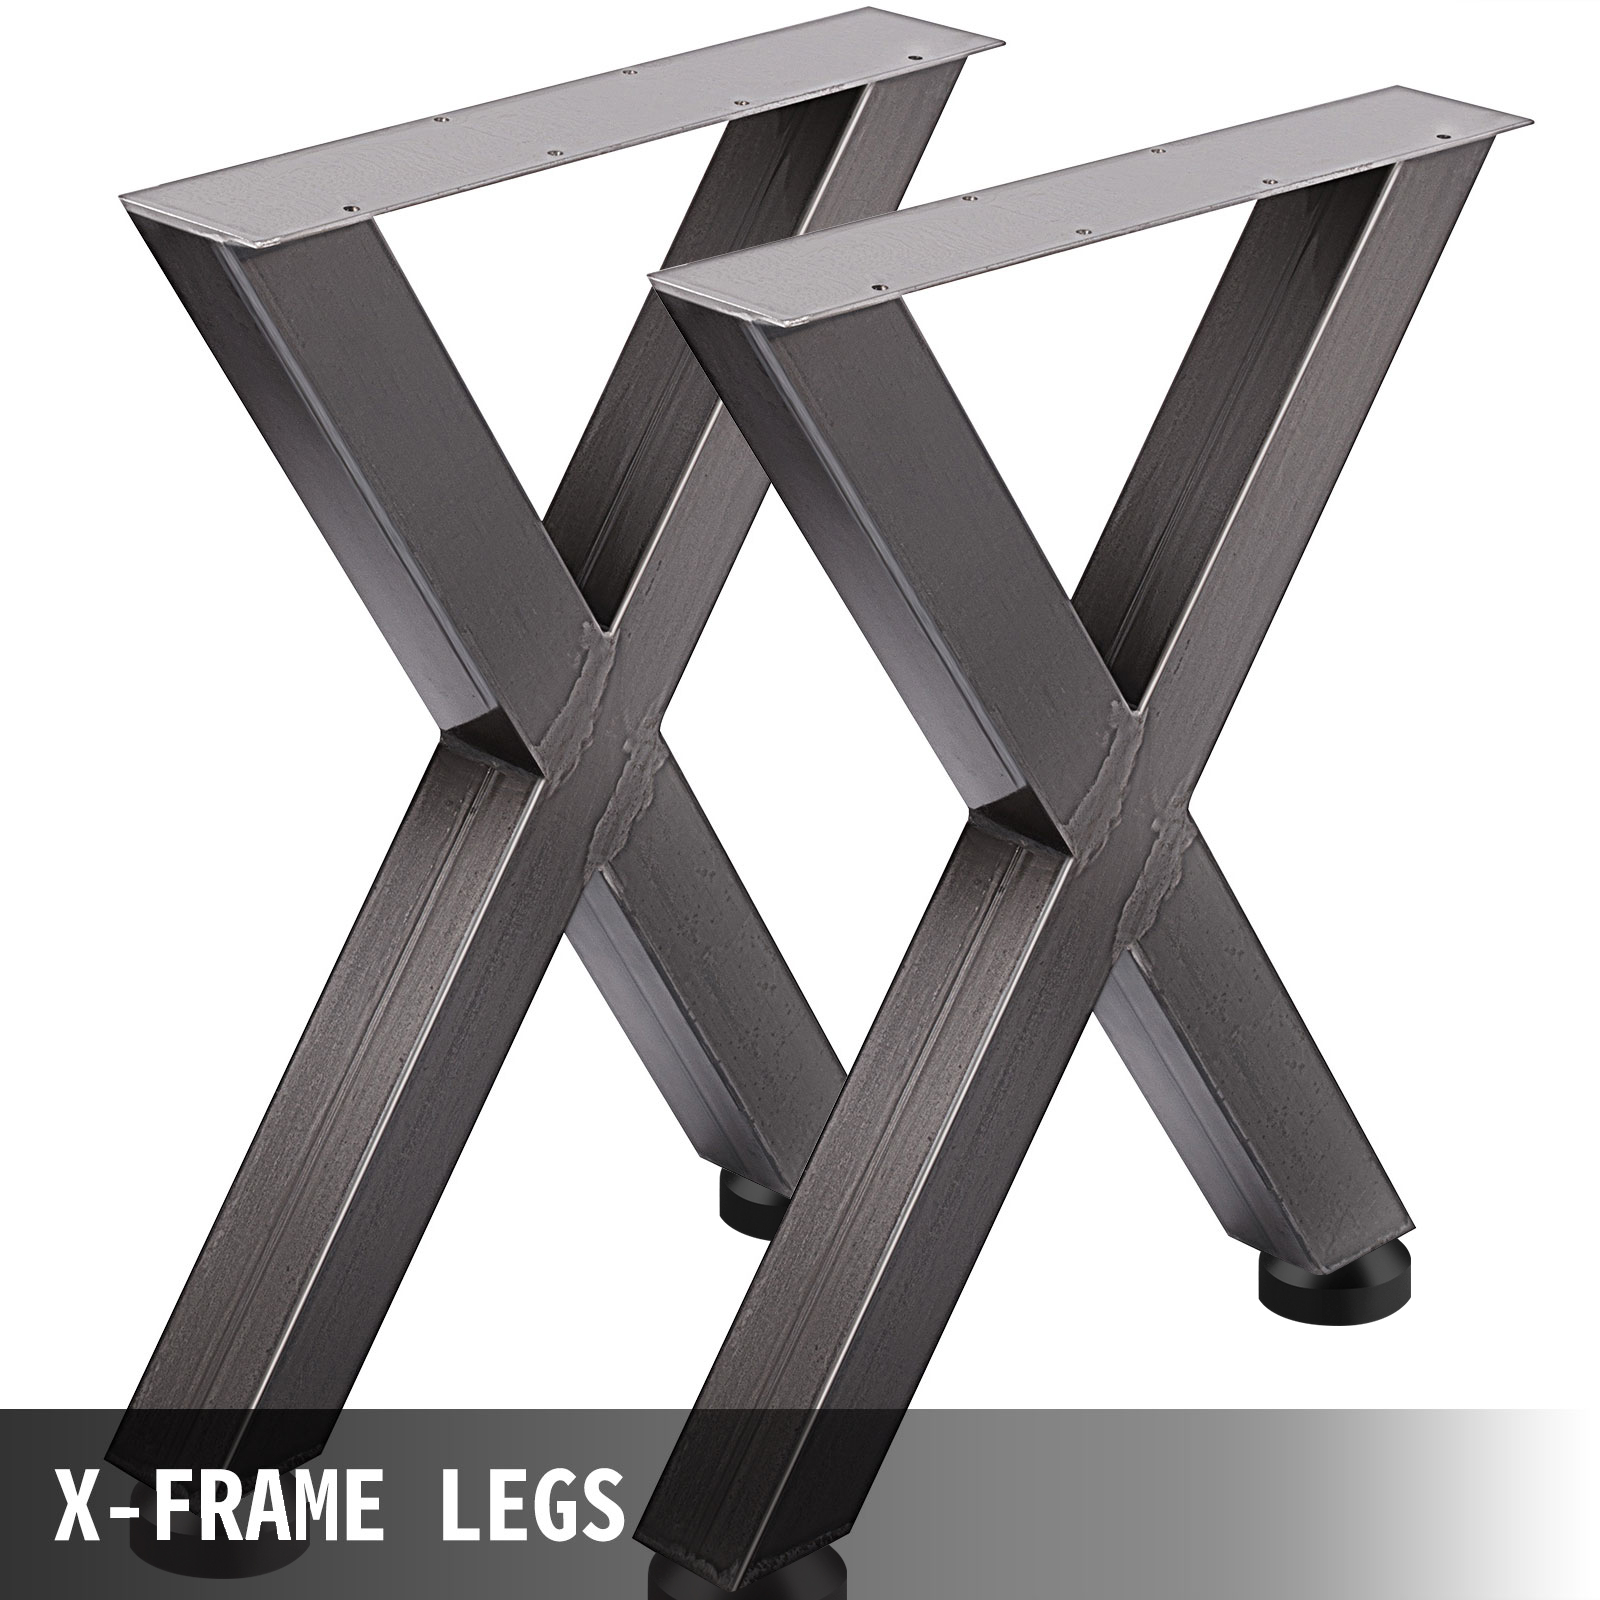 VEVOR ножки стола 720 x 600 мм X-Frame, каркас стола 28 x 24 дюйма направляющие стола из нержавеющей стали черные легкая сборка, ножки стола металлические черные аксессуары для стола для обеденного стола стол журнальный столик